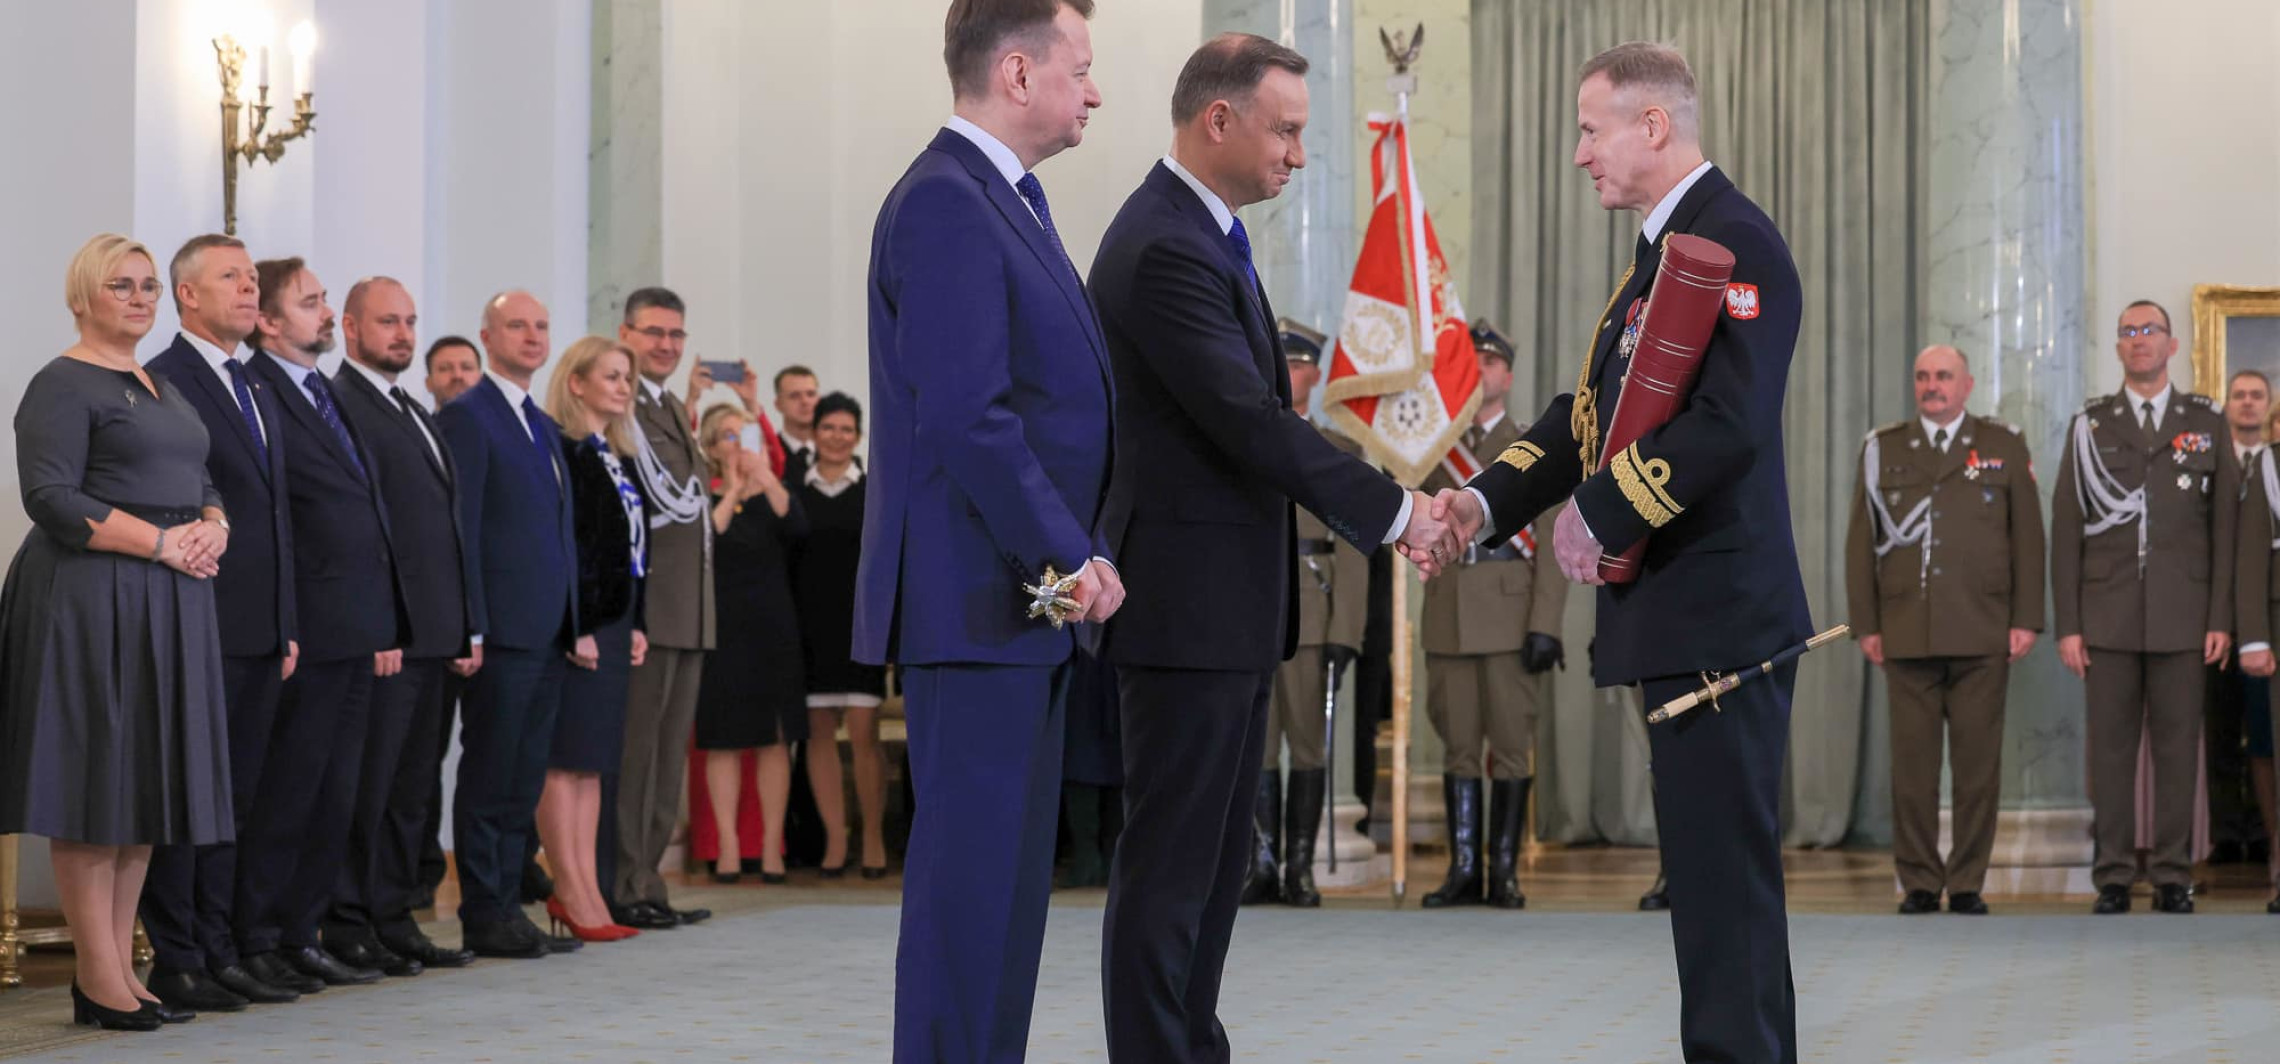 Inowrocław - Prezydent RP mianował na stopień kontradmirała Jarosława Wypijewskiego